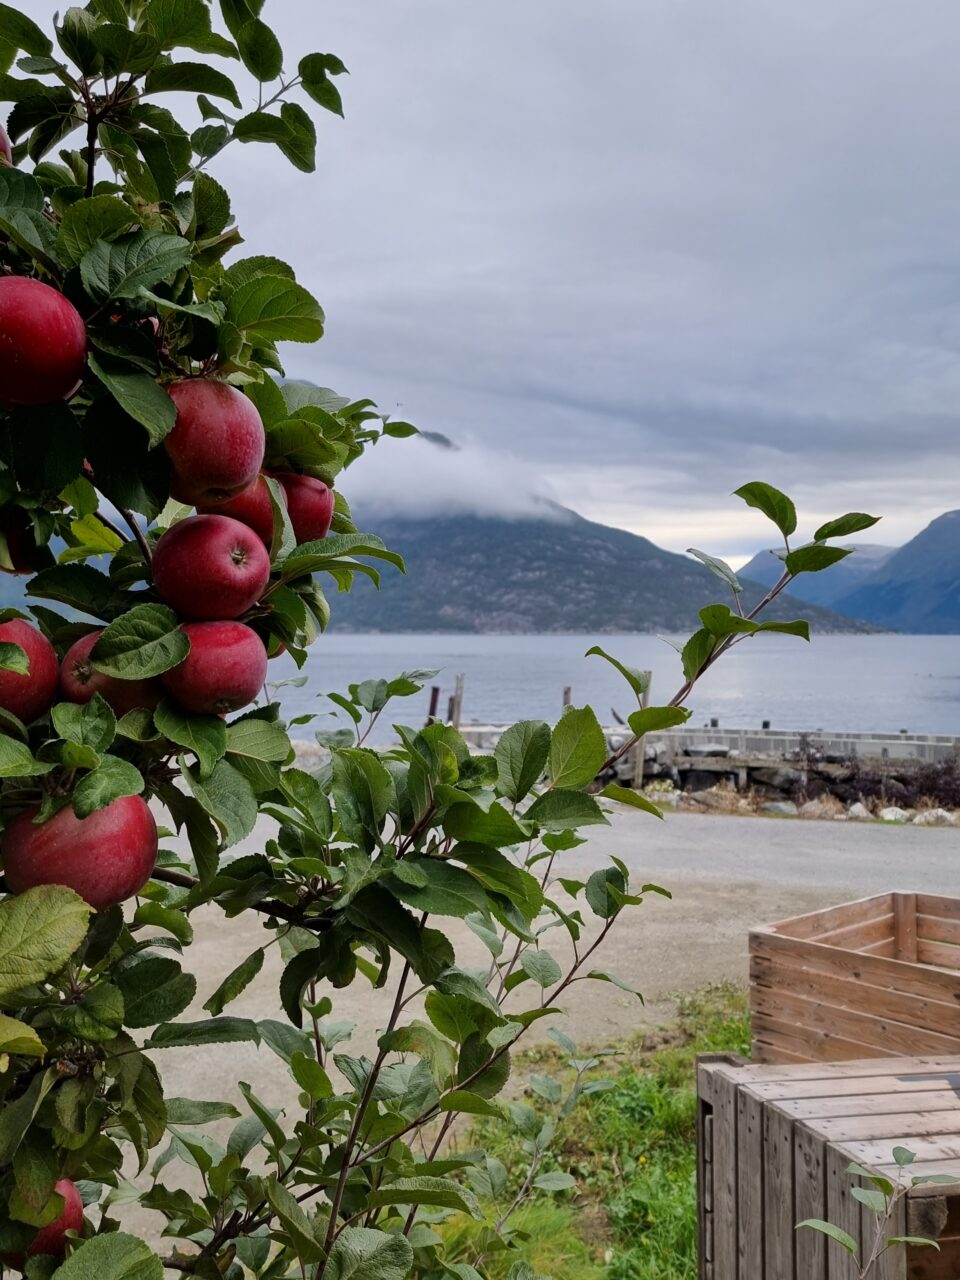 Røde epler som henger på et epletre ved Hardangerfjorden